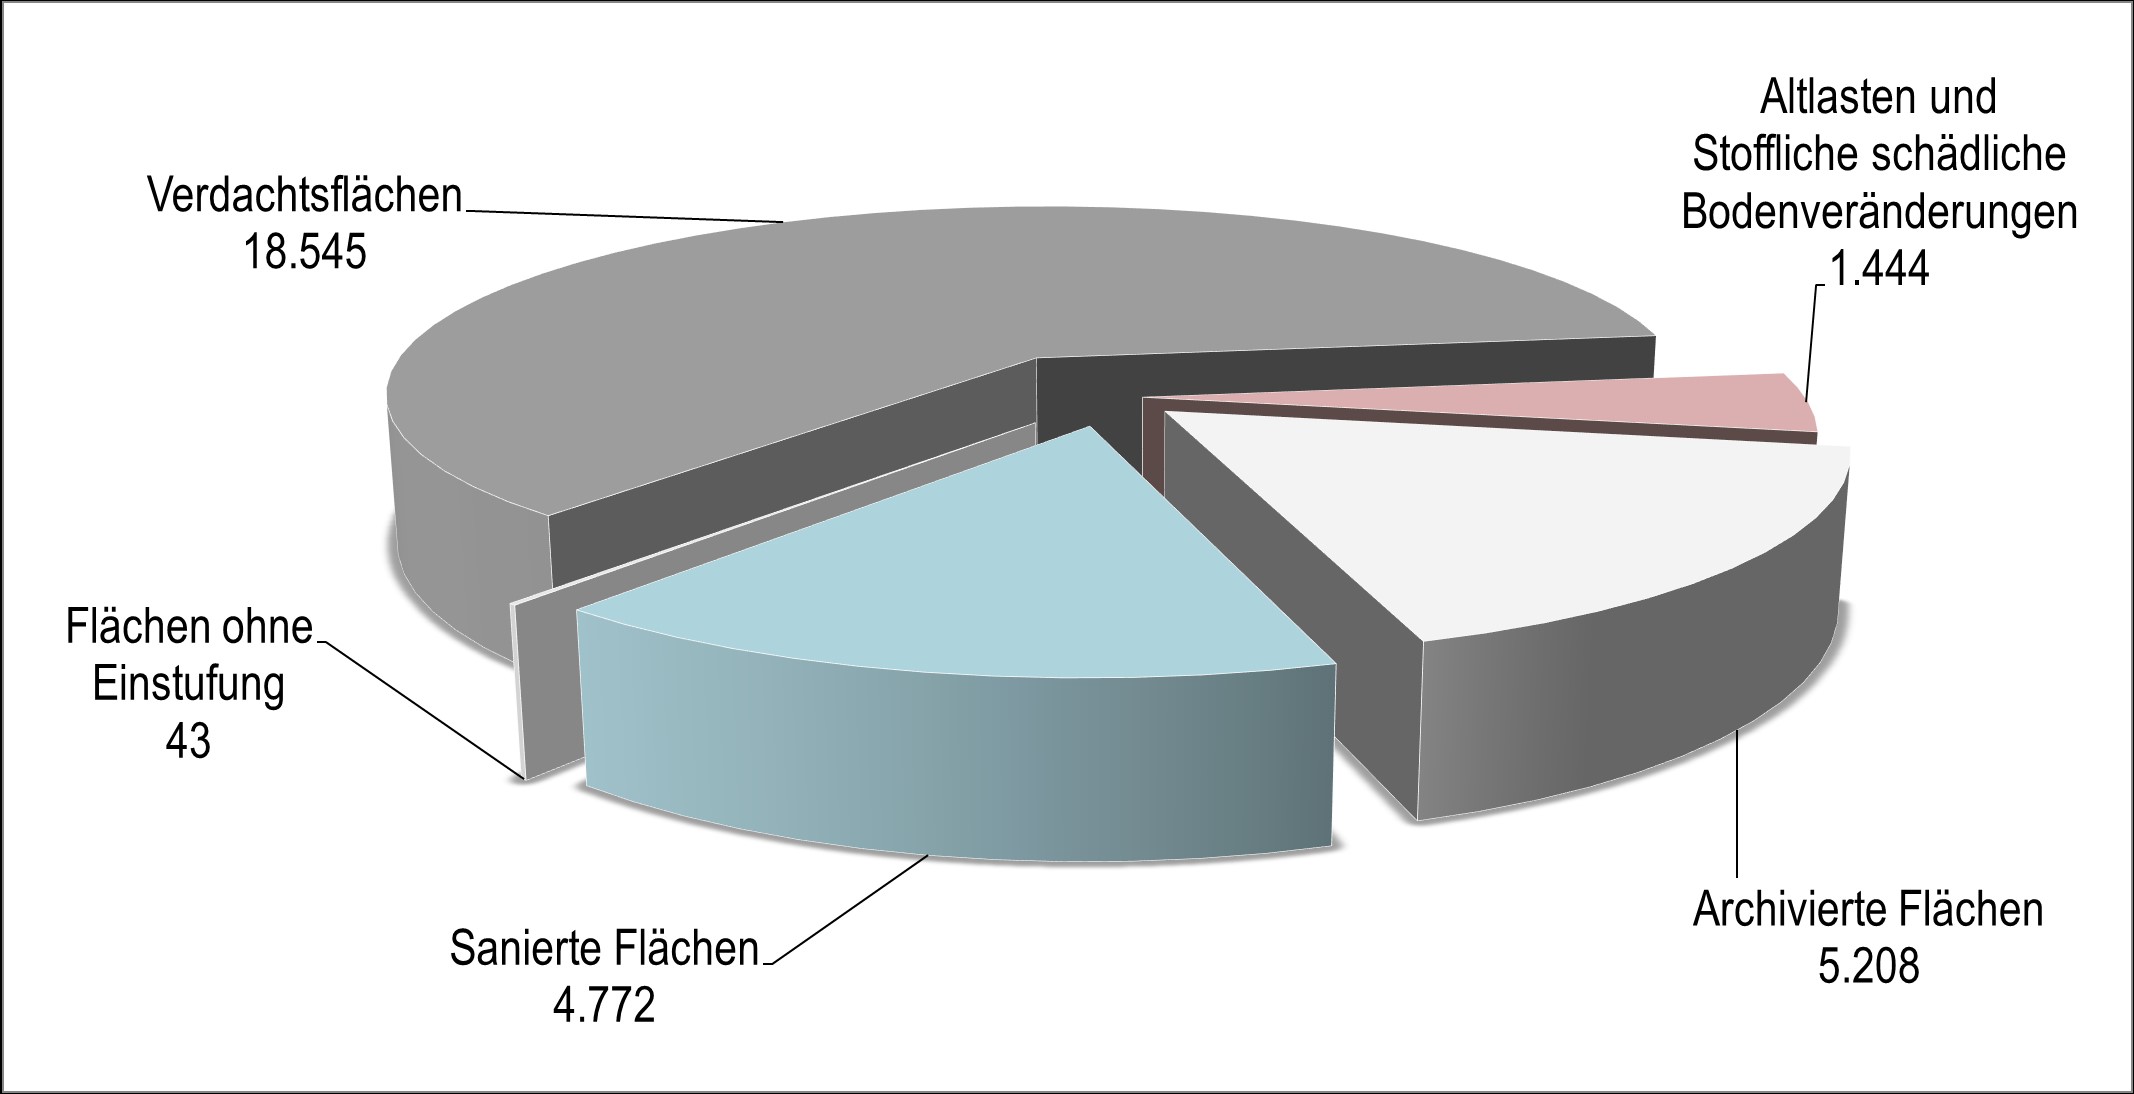 In einem Tortendiagramm ist die Verteilung der Flächen in 18.545 Verdachtsflächen, 1.444 Altlasten, 4.772 sanierte und 5.208 archivierte Flächen dargestellt. 